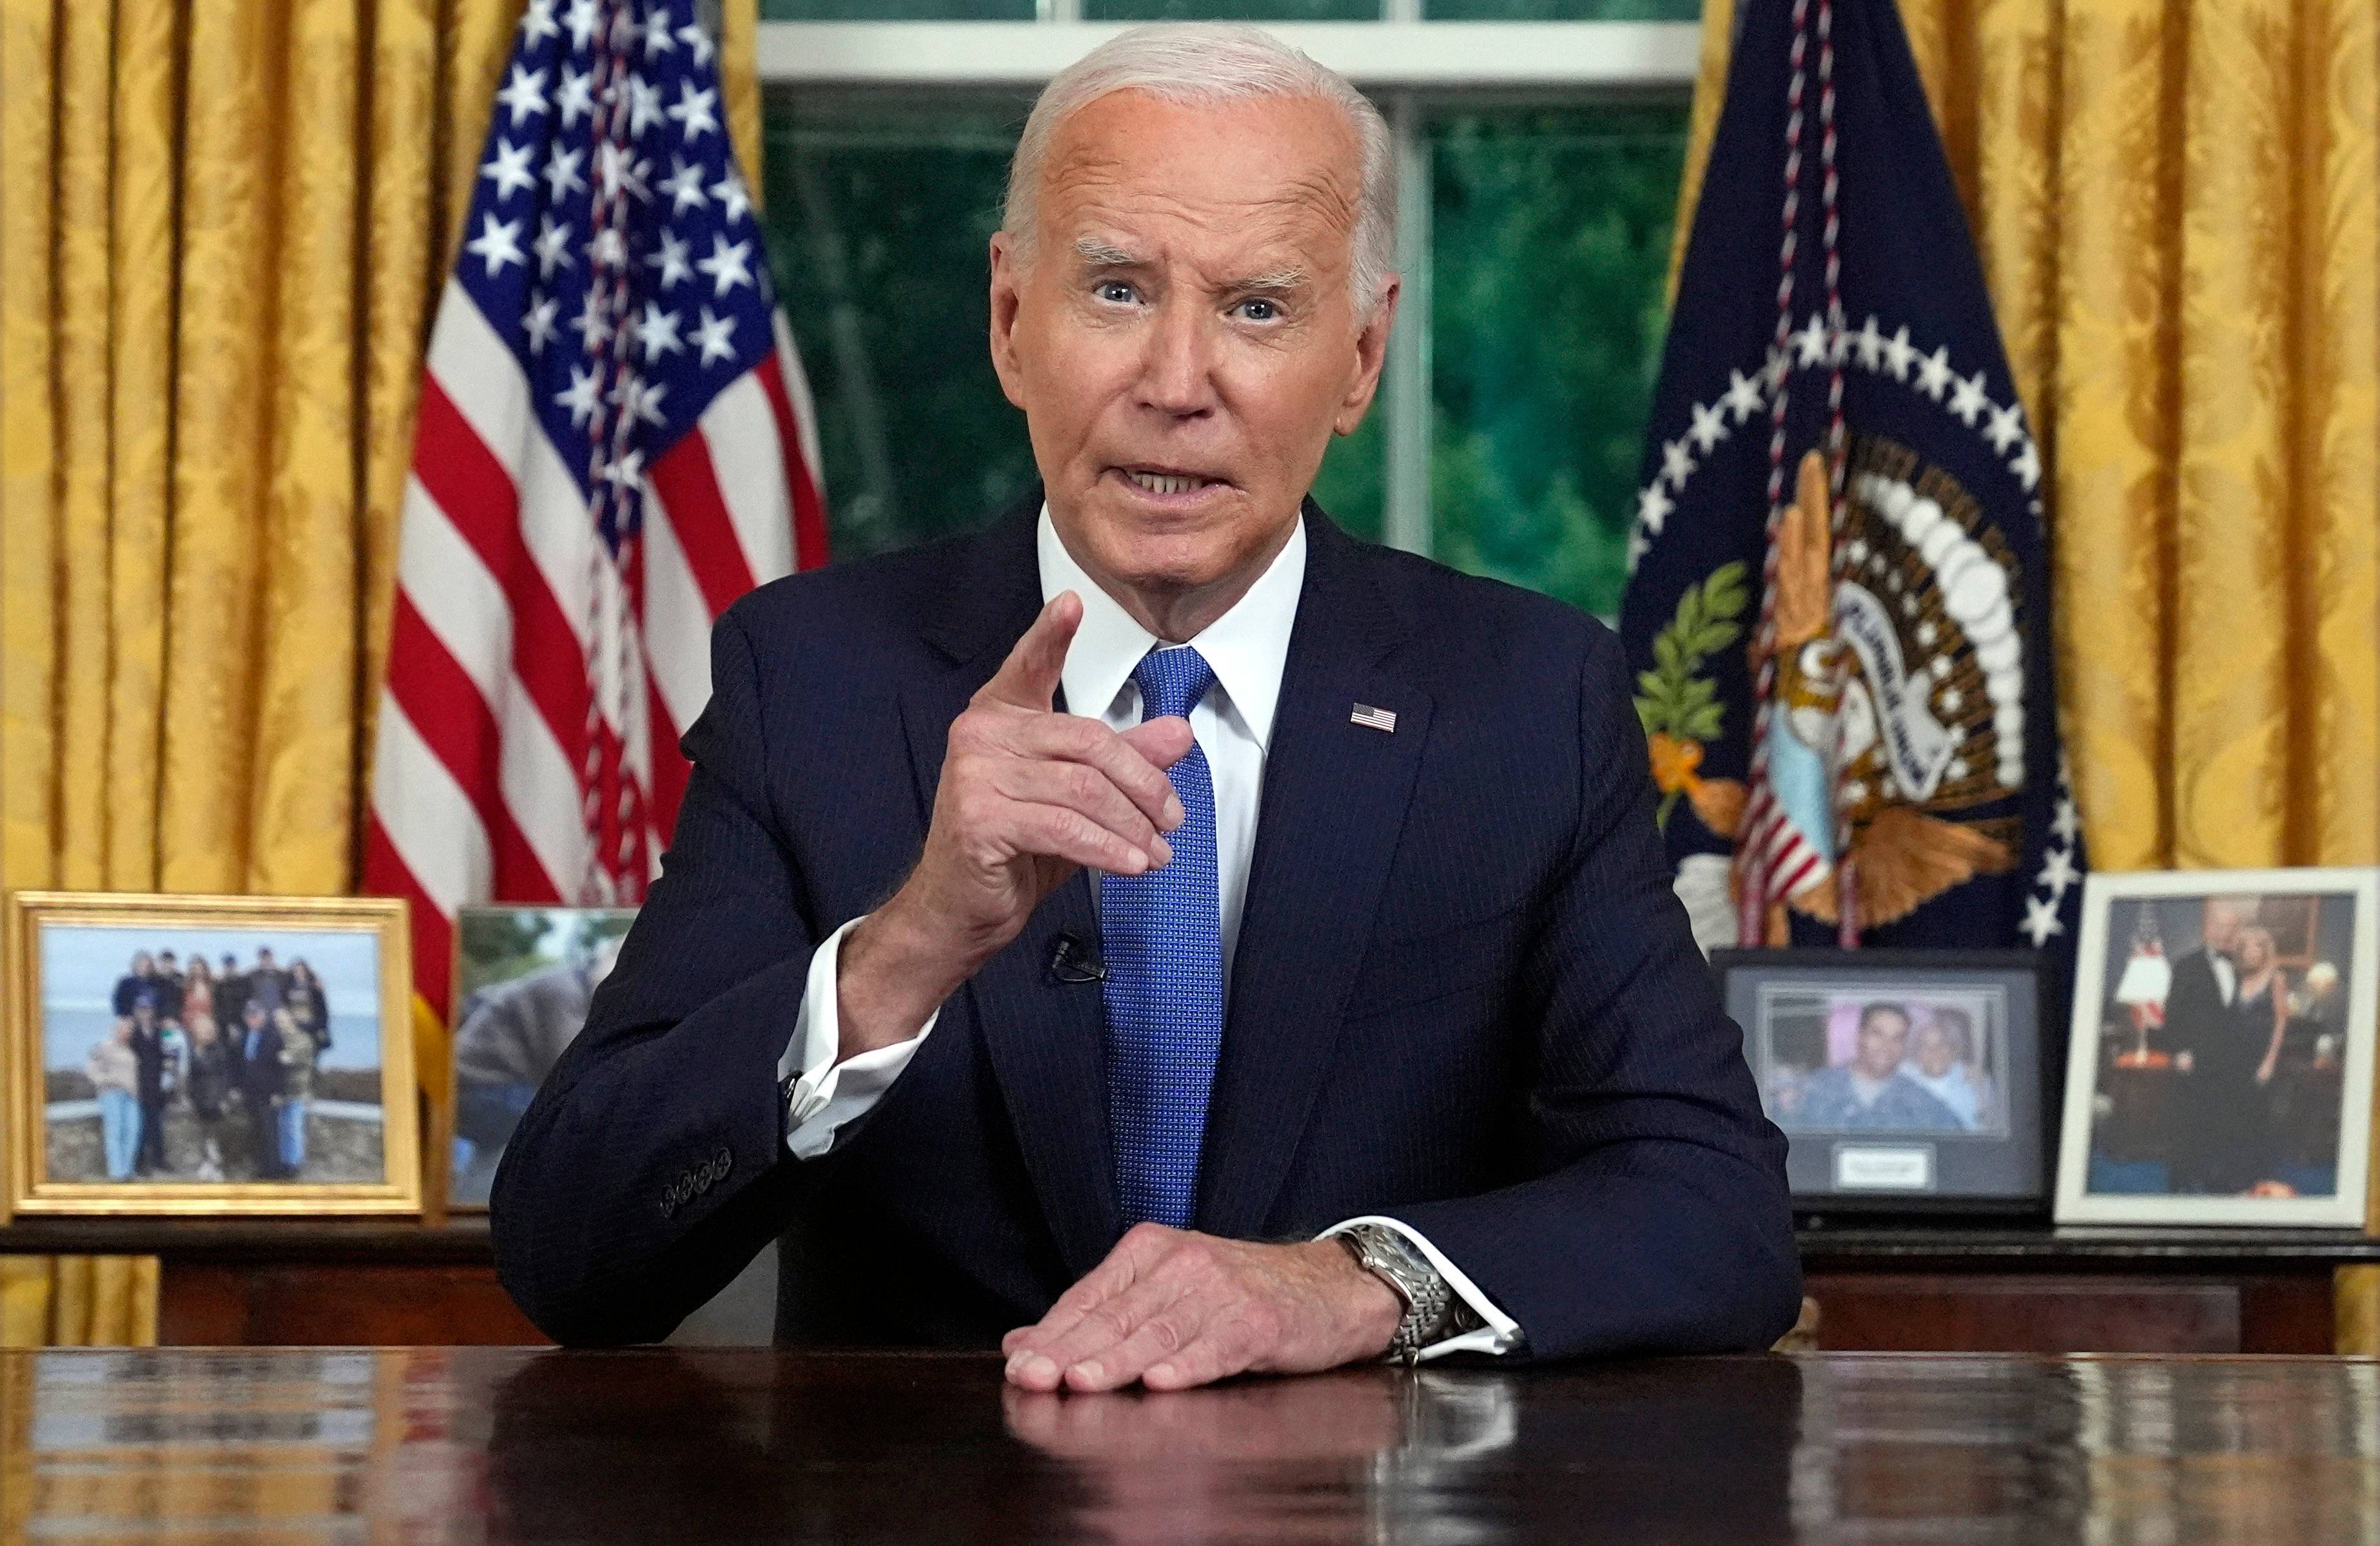 Prezydent Joe Biden ubrany w ciemny garnitur i błękitny krawat przemawia siedząc przy biurku w gabinecie owalnym w Białym Domu. Za jego plecami wisi amerykańska flaga oraz sztandar prezydenta USA.